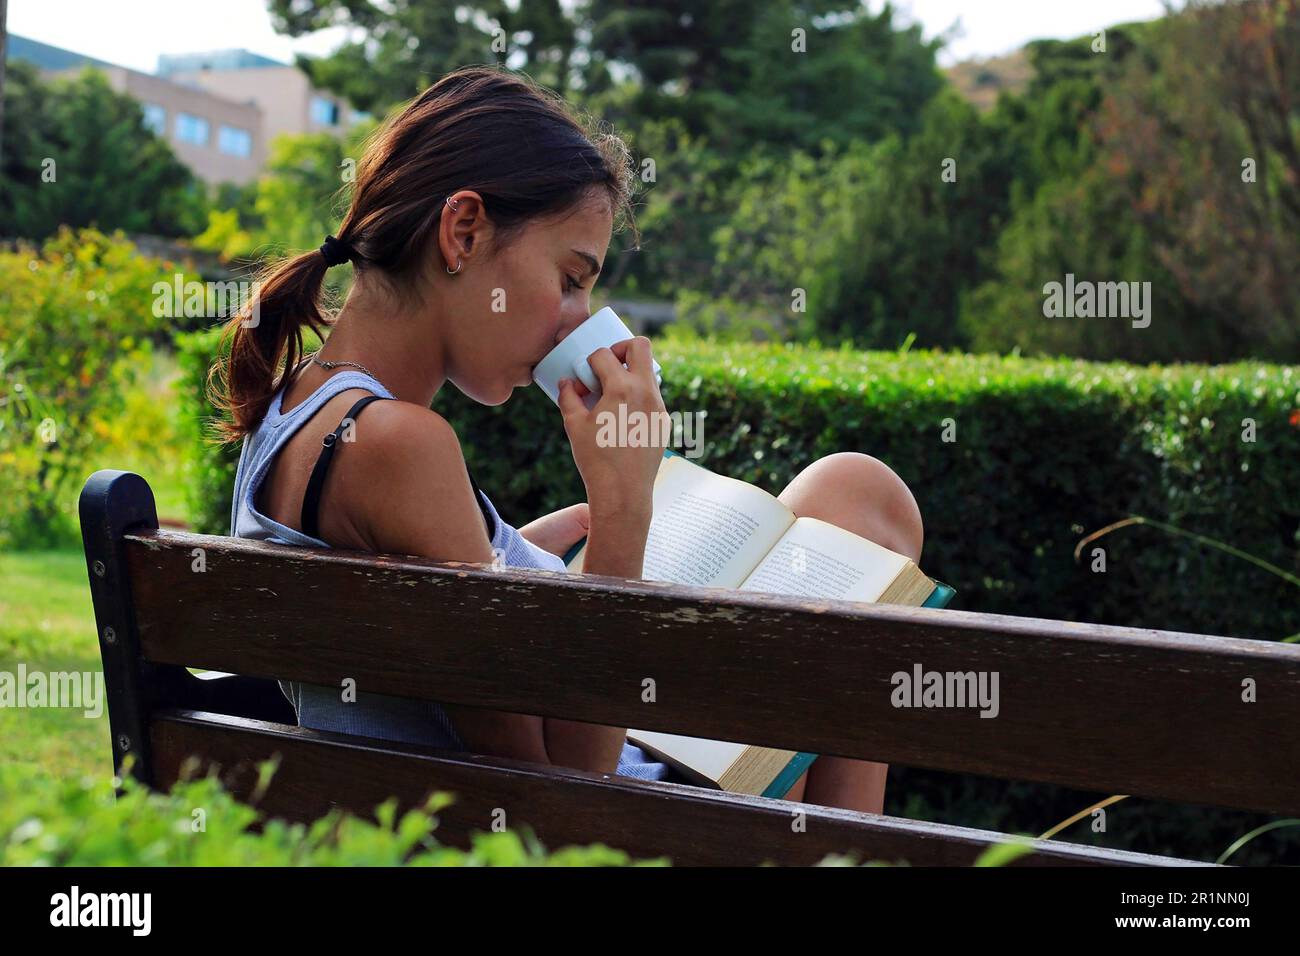 Eine Frau, die auf einer Bank sitzt, ein Buch im Wald liest und trinkt. Stockfoto